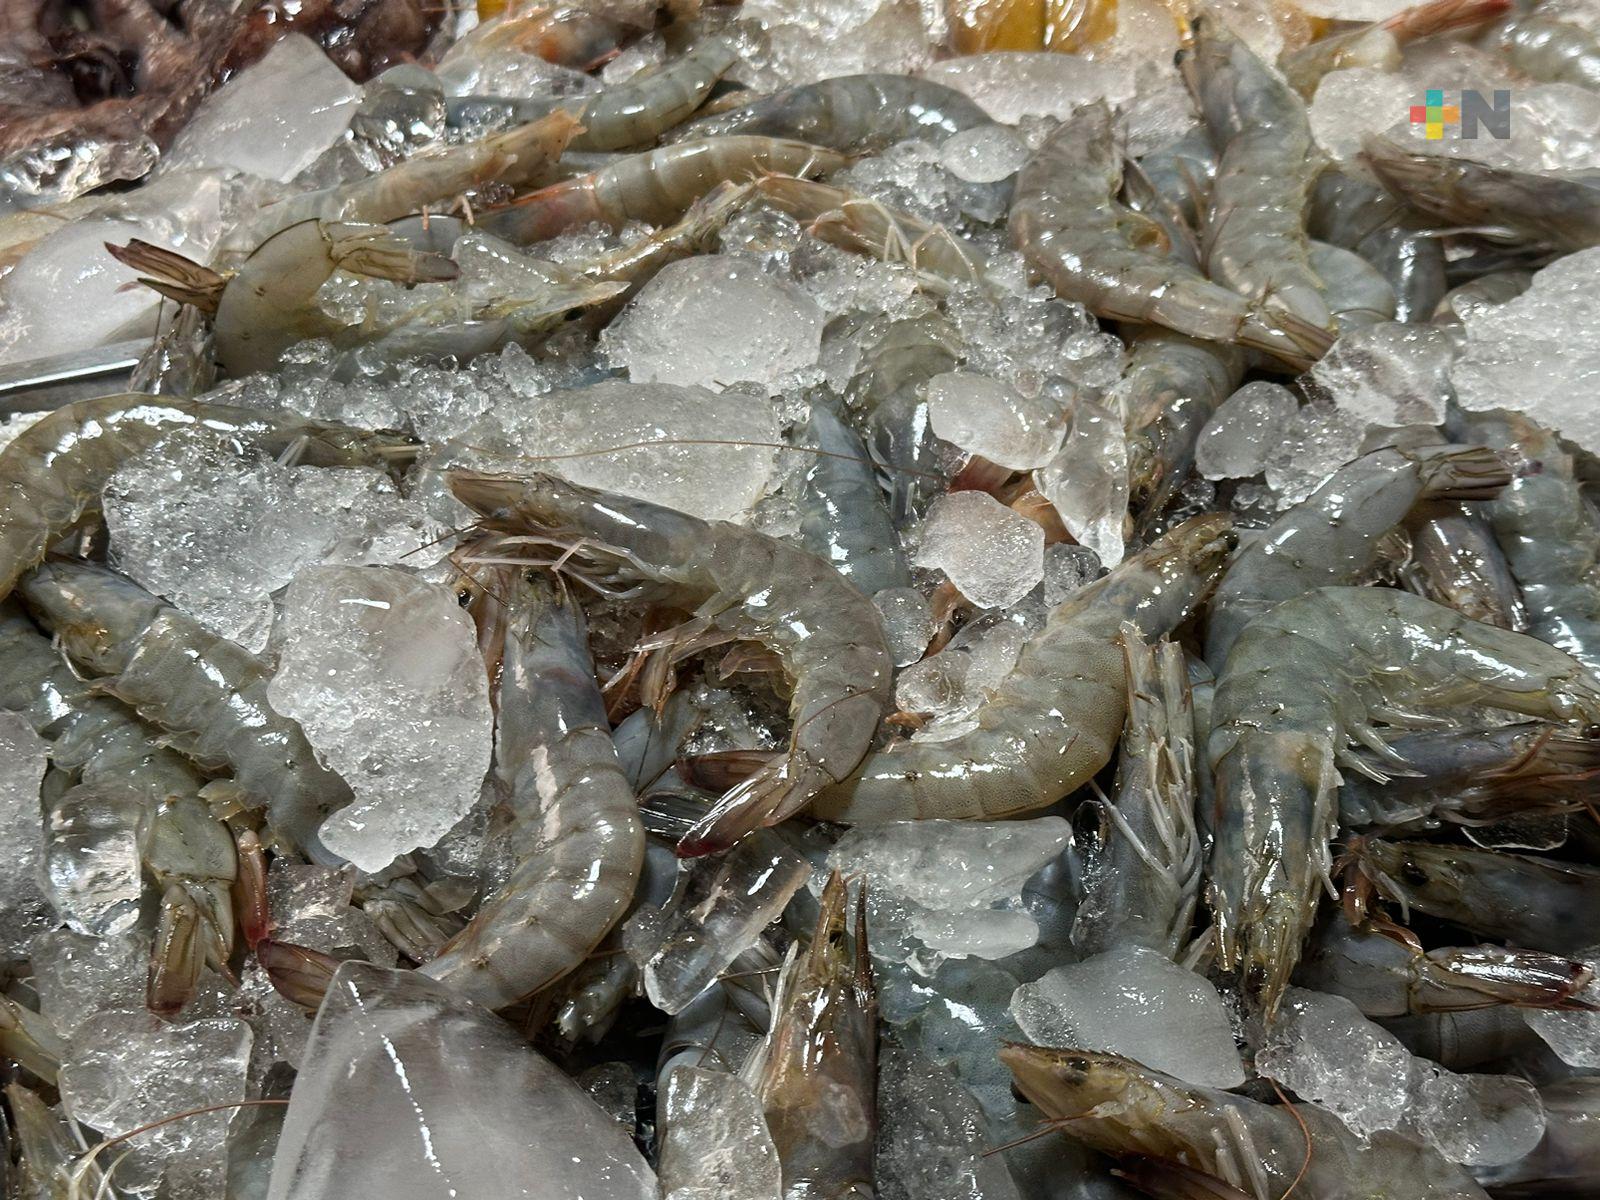 Venta de mariscos baja por precio y costo de preservación; requiere de hielo